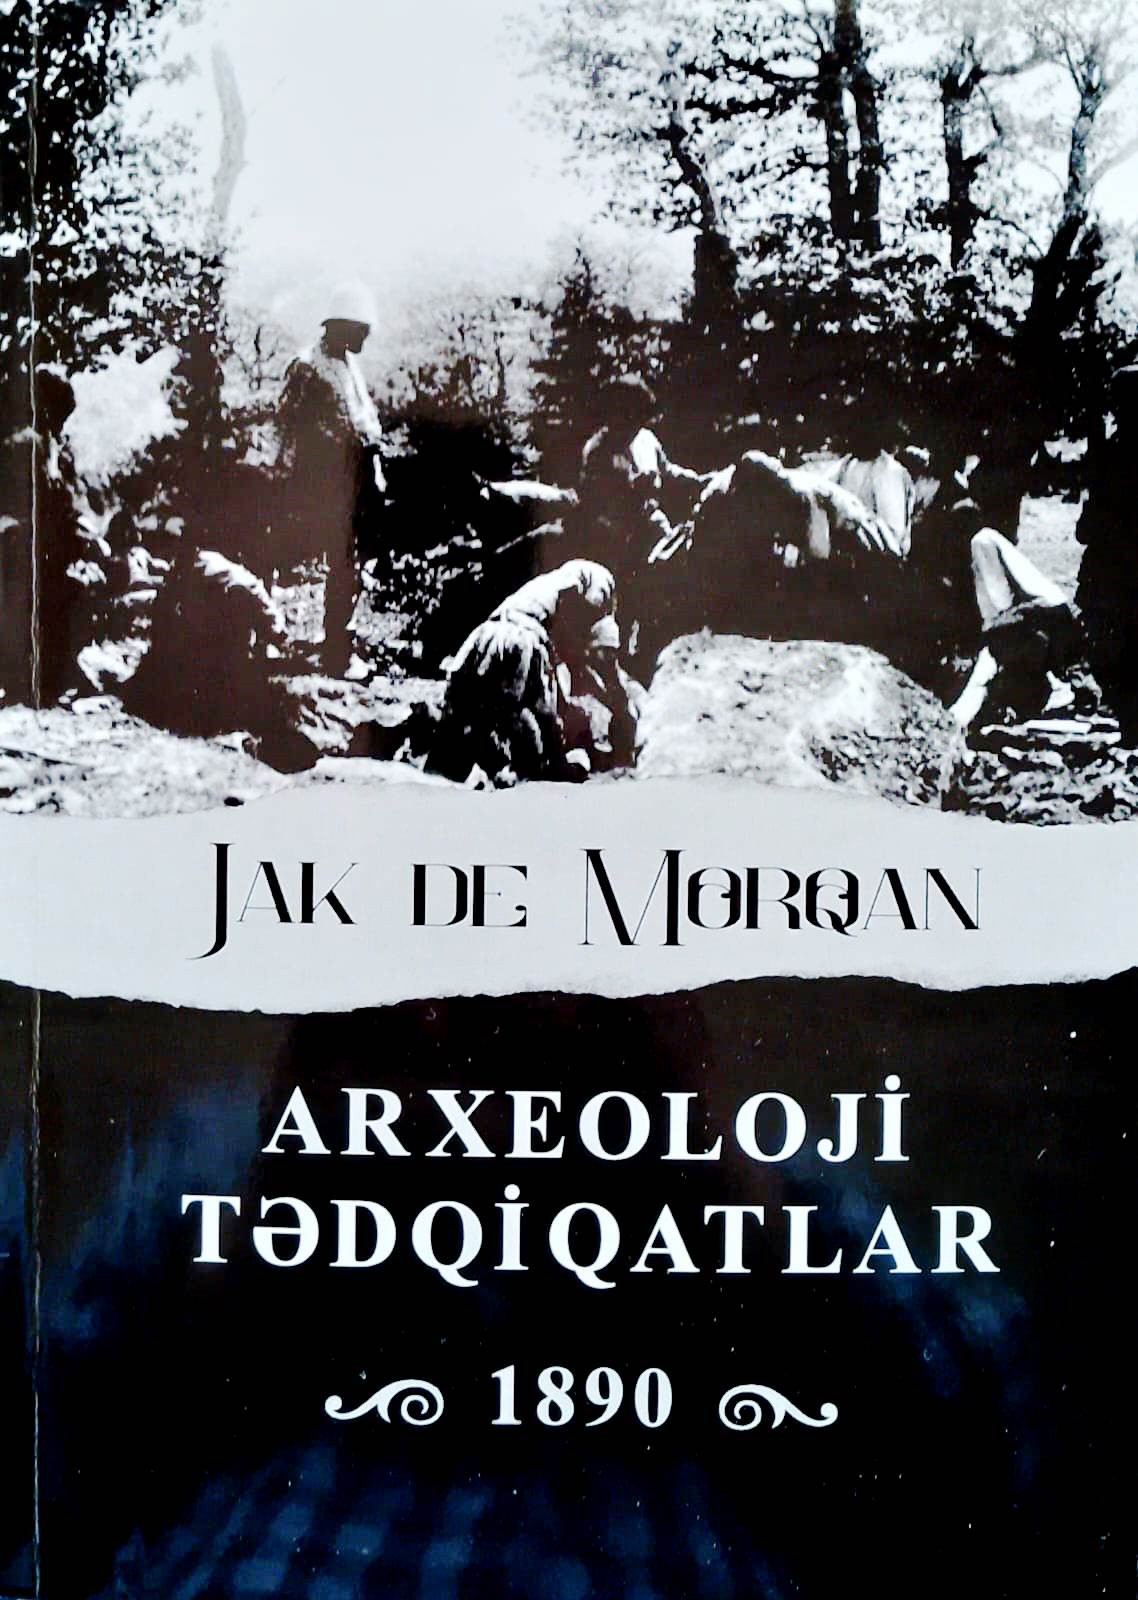 Книга французского археолога «Археологические исследования» издана на азербайджанском языке